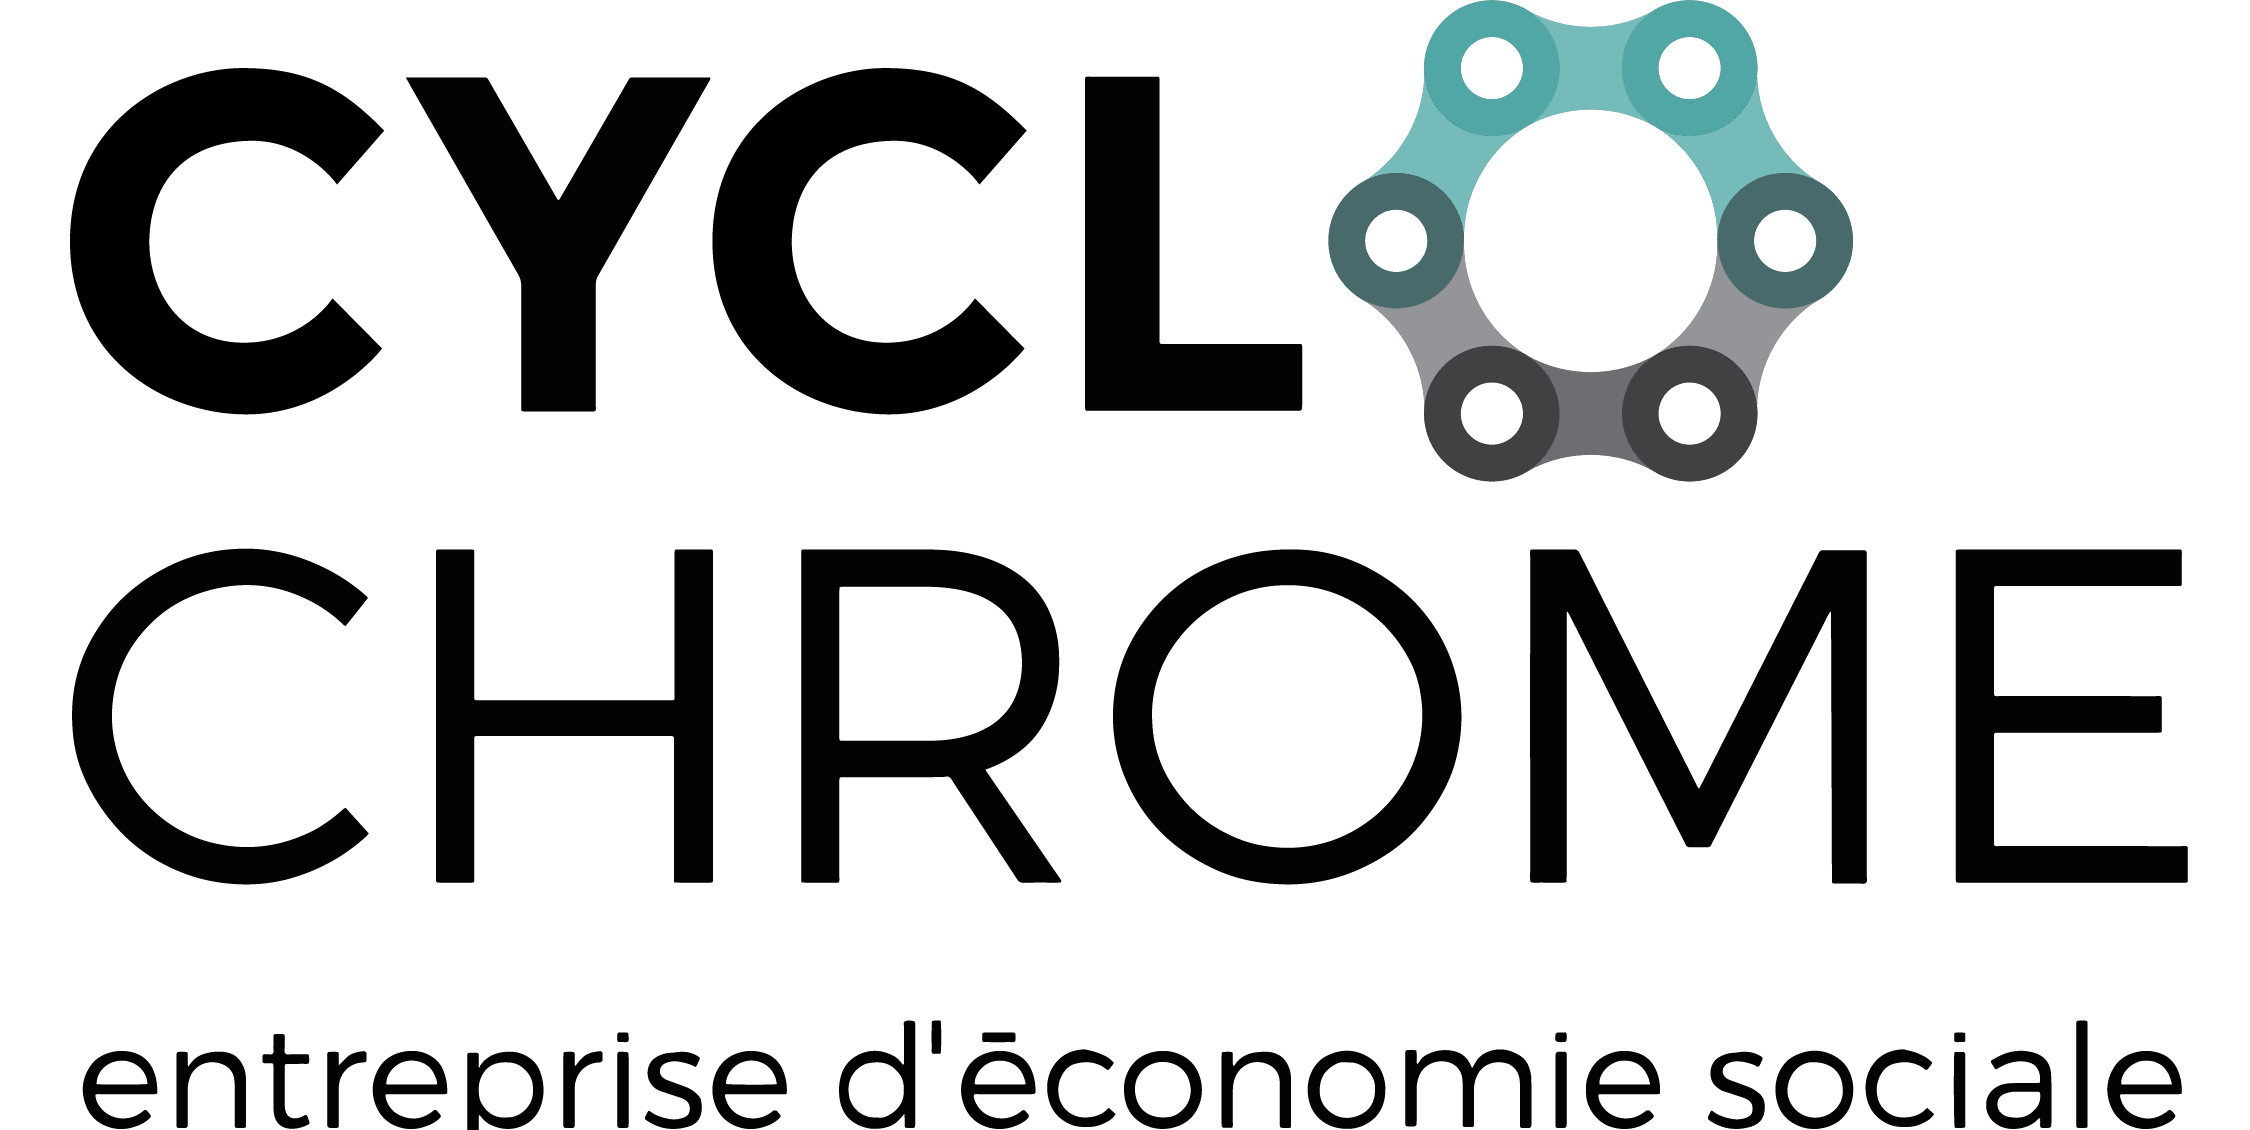 CycloChrome, entreprise d'économie sociale